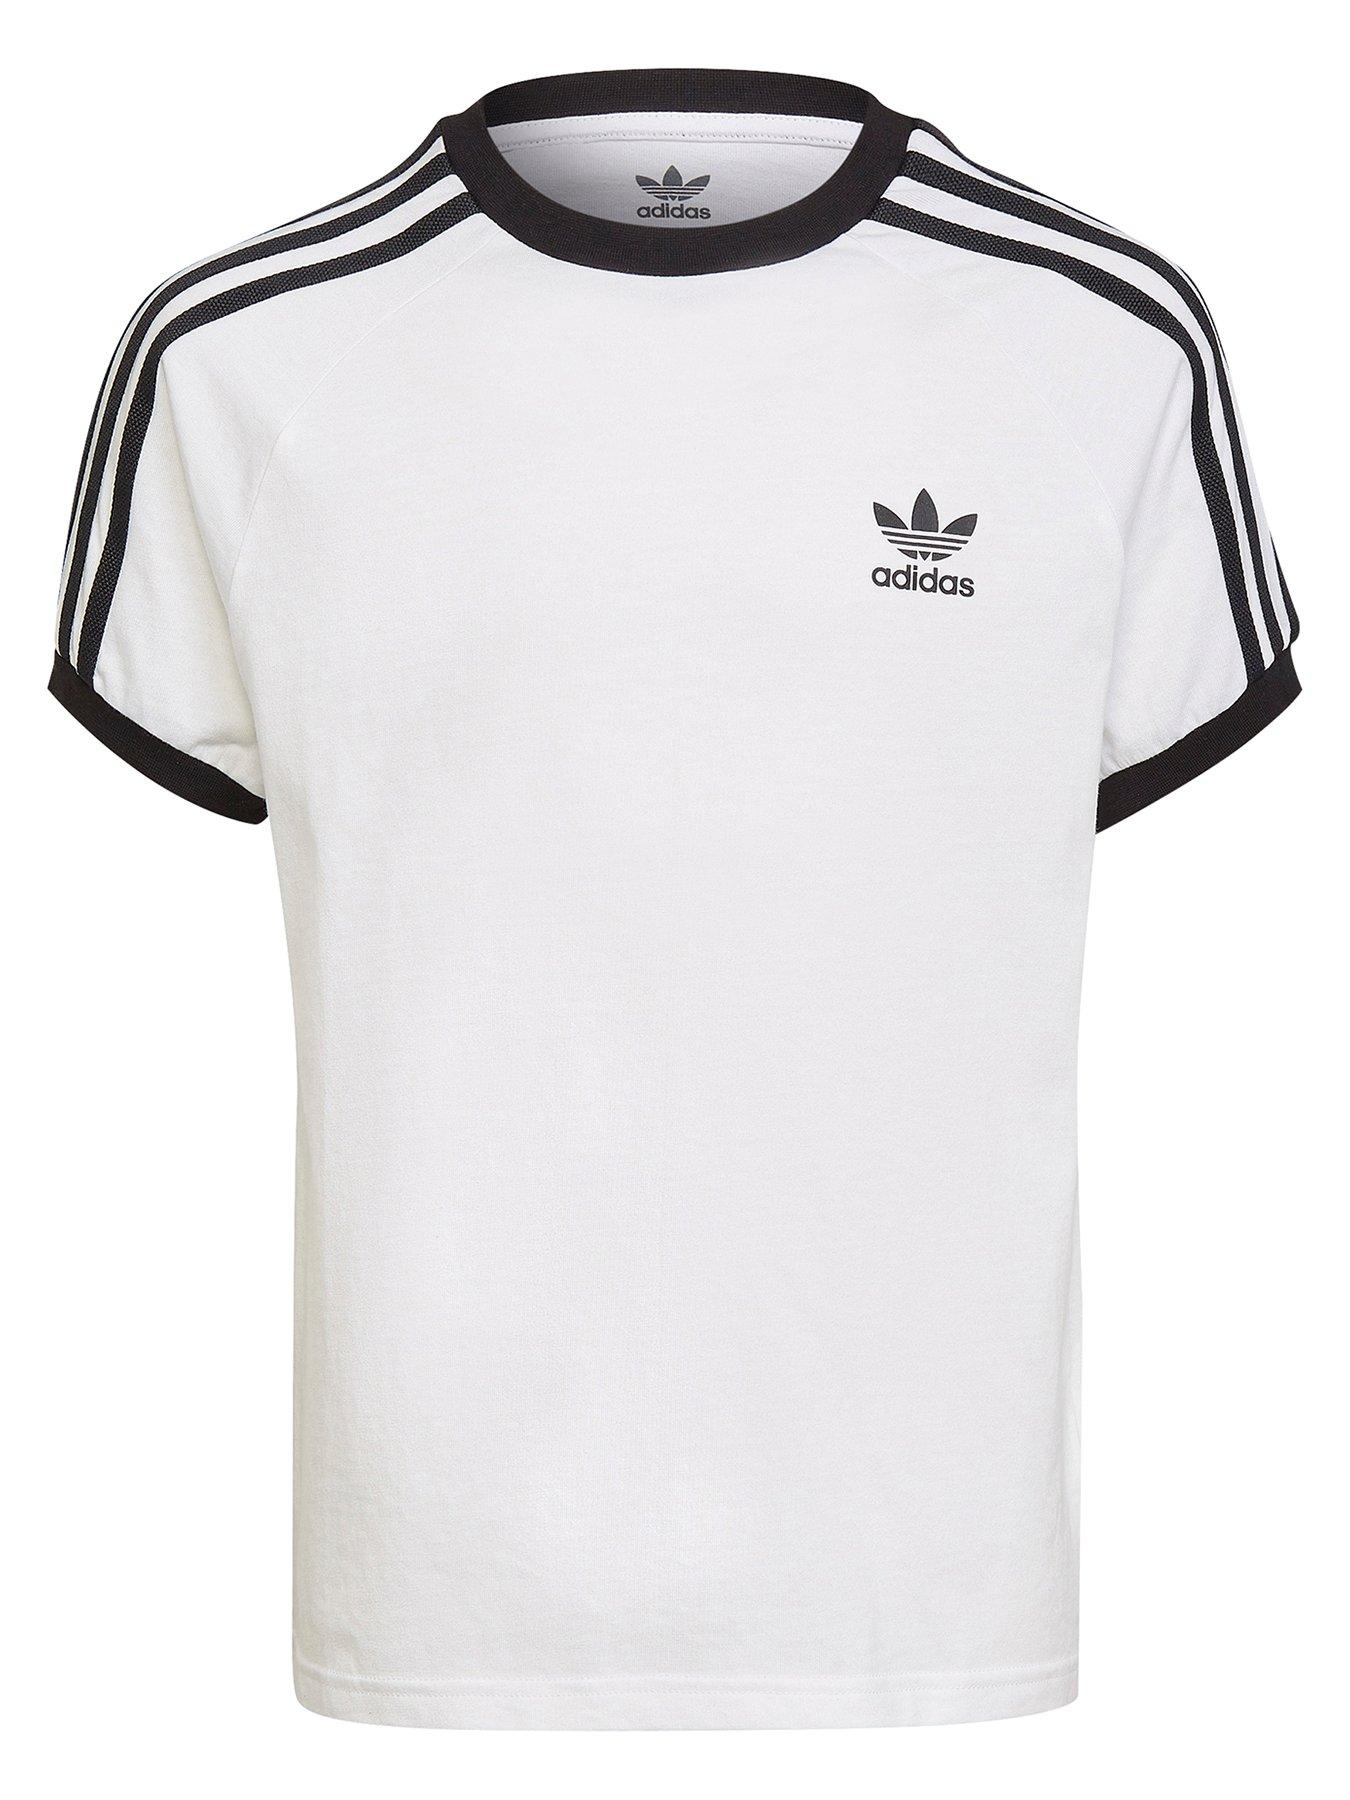 adidas Originals Junior Adicolor Trefoil T-Shirt - White | very.co.uk